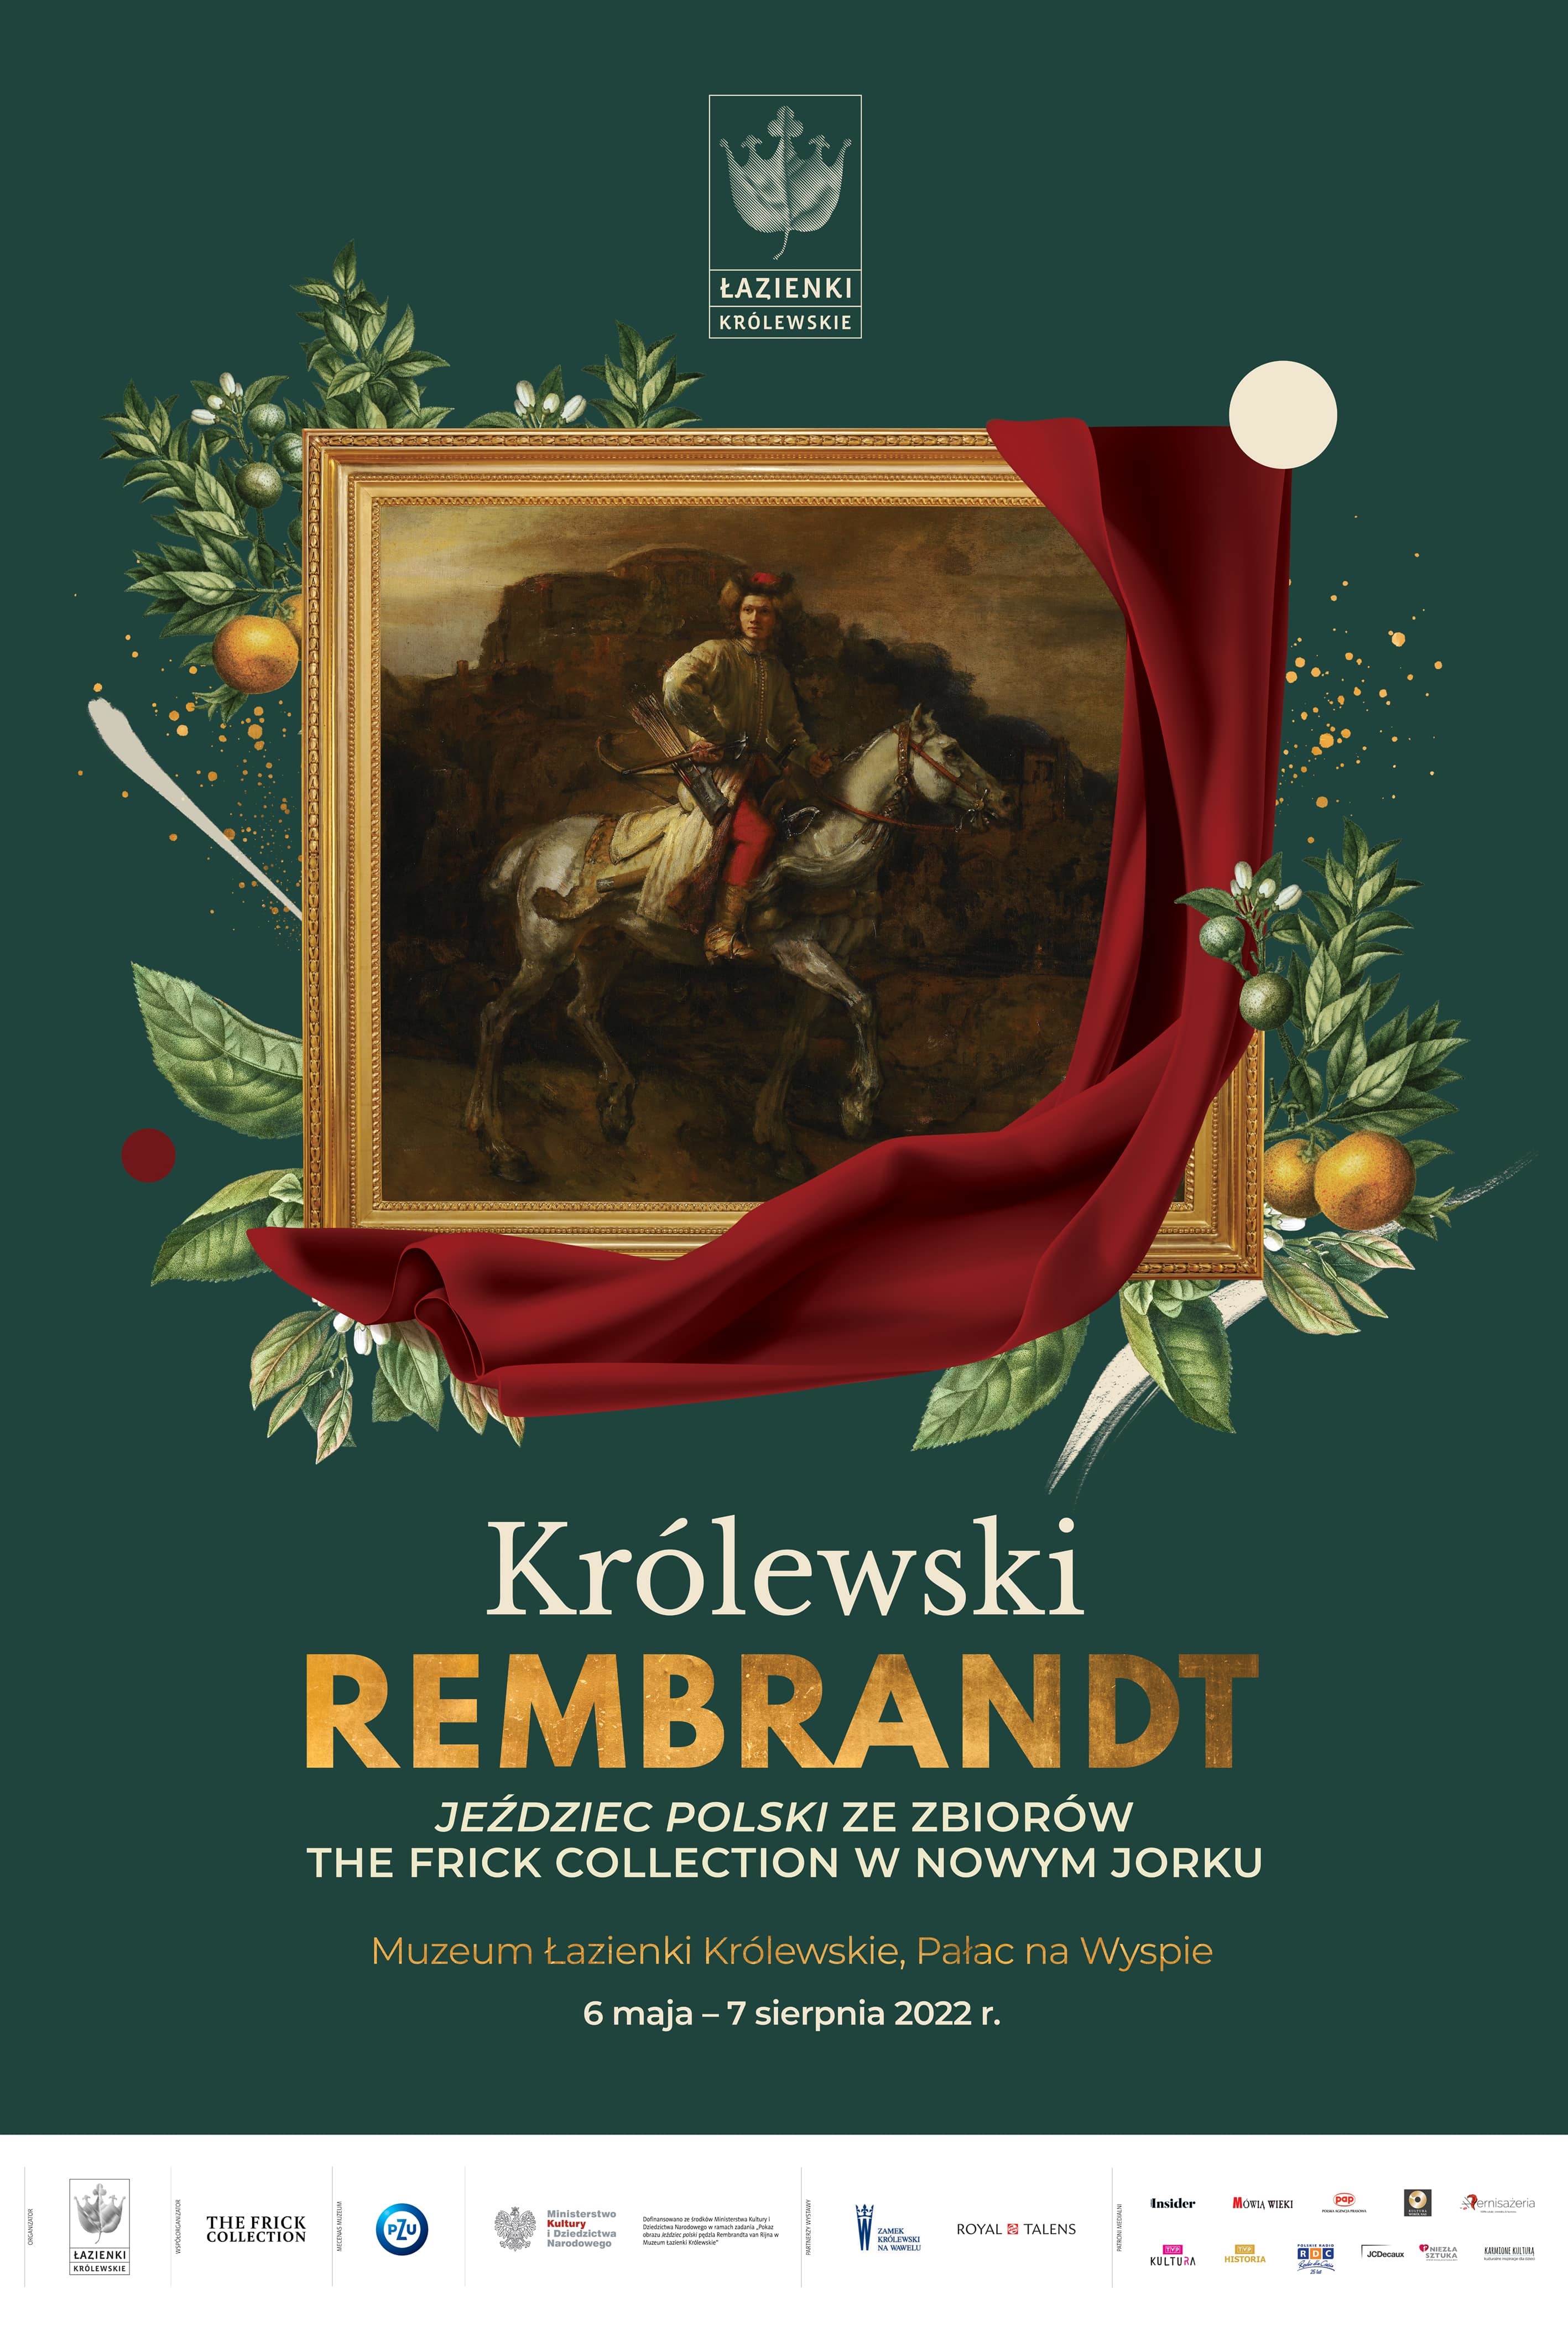 mat.: Muzeum azienki Królewskie w Warszawie - Królewski Rembrandt